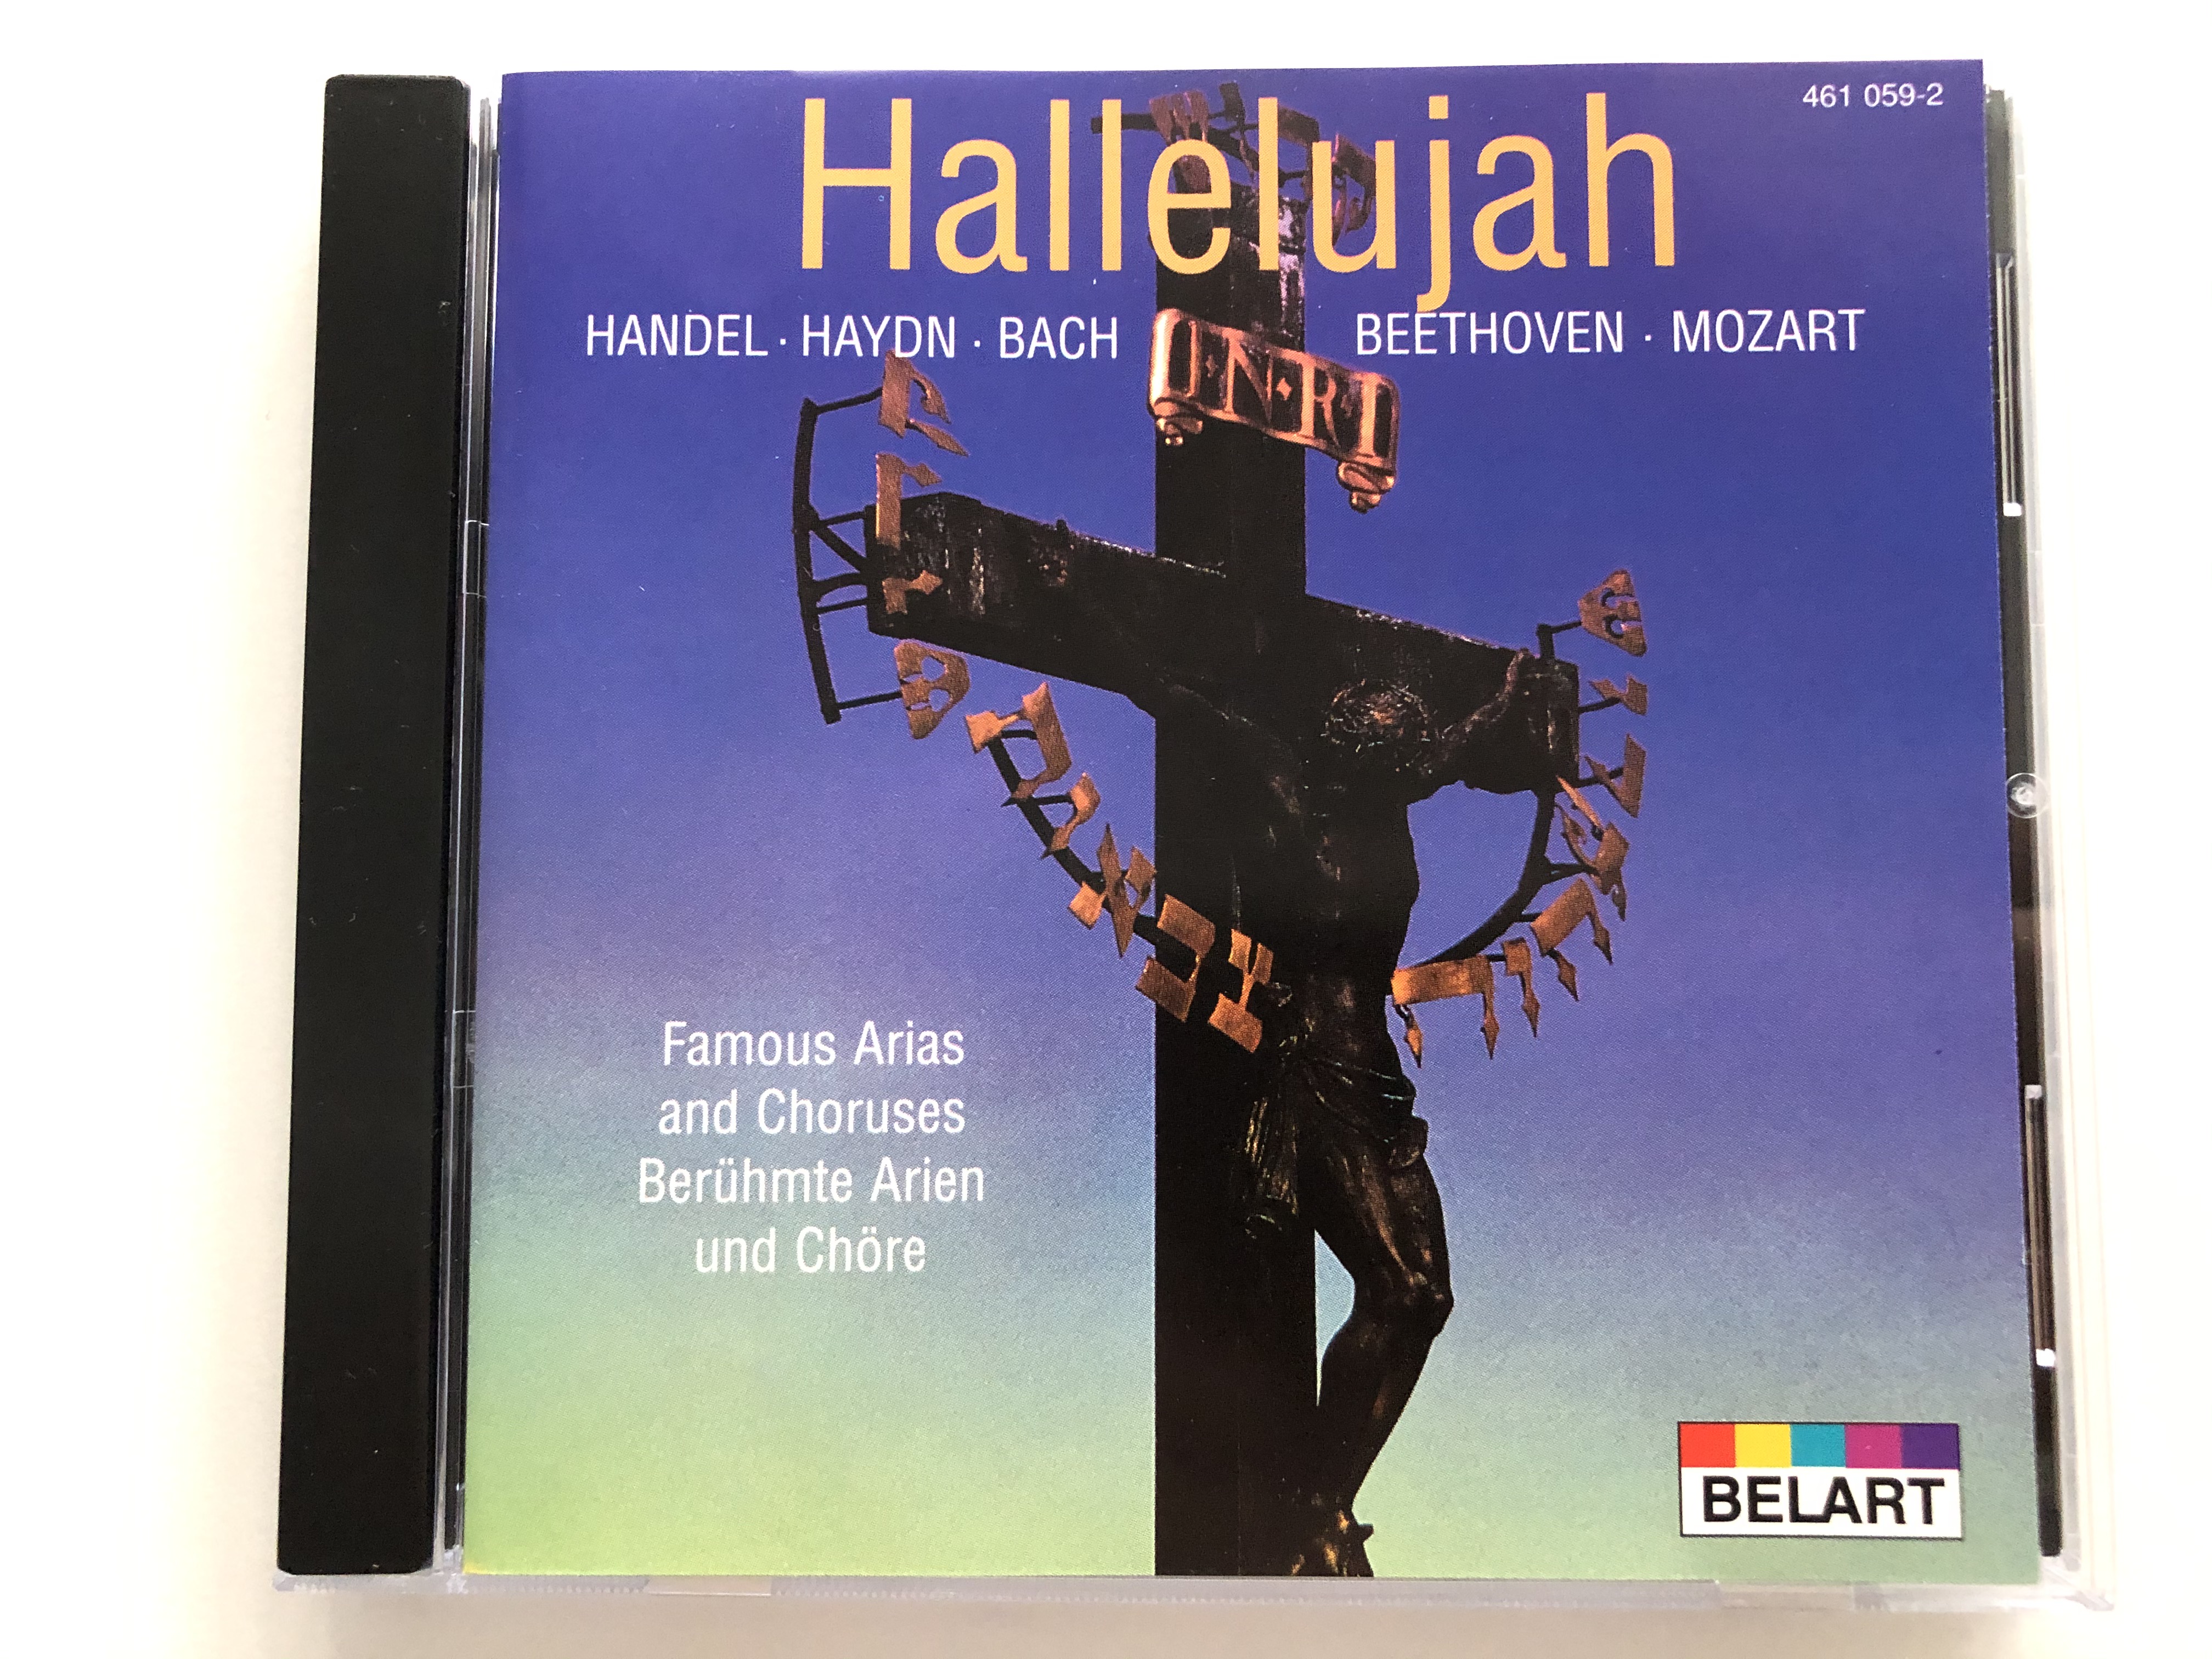 hallelujah-handel-haydn-bach-beethoven-mozart-famous-arias-and-choruses-beruhmte-arien-und-chore-belart-audio-cd-stereo-461-059-2-1-.jpg